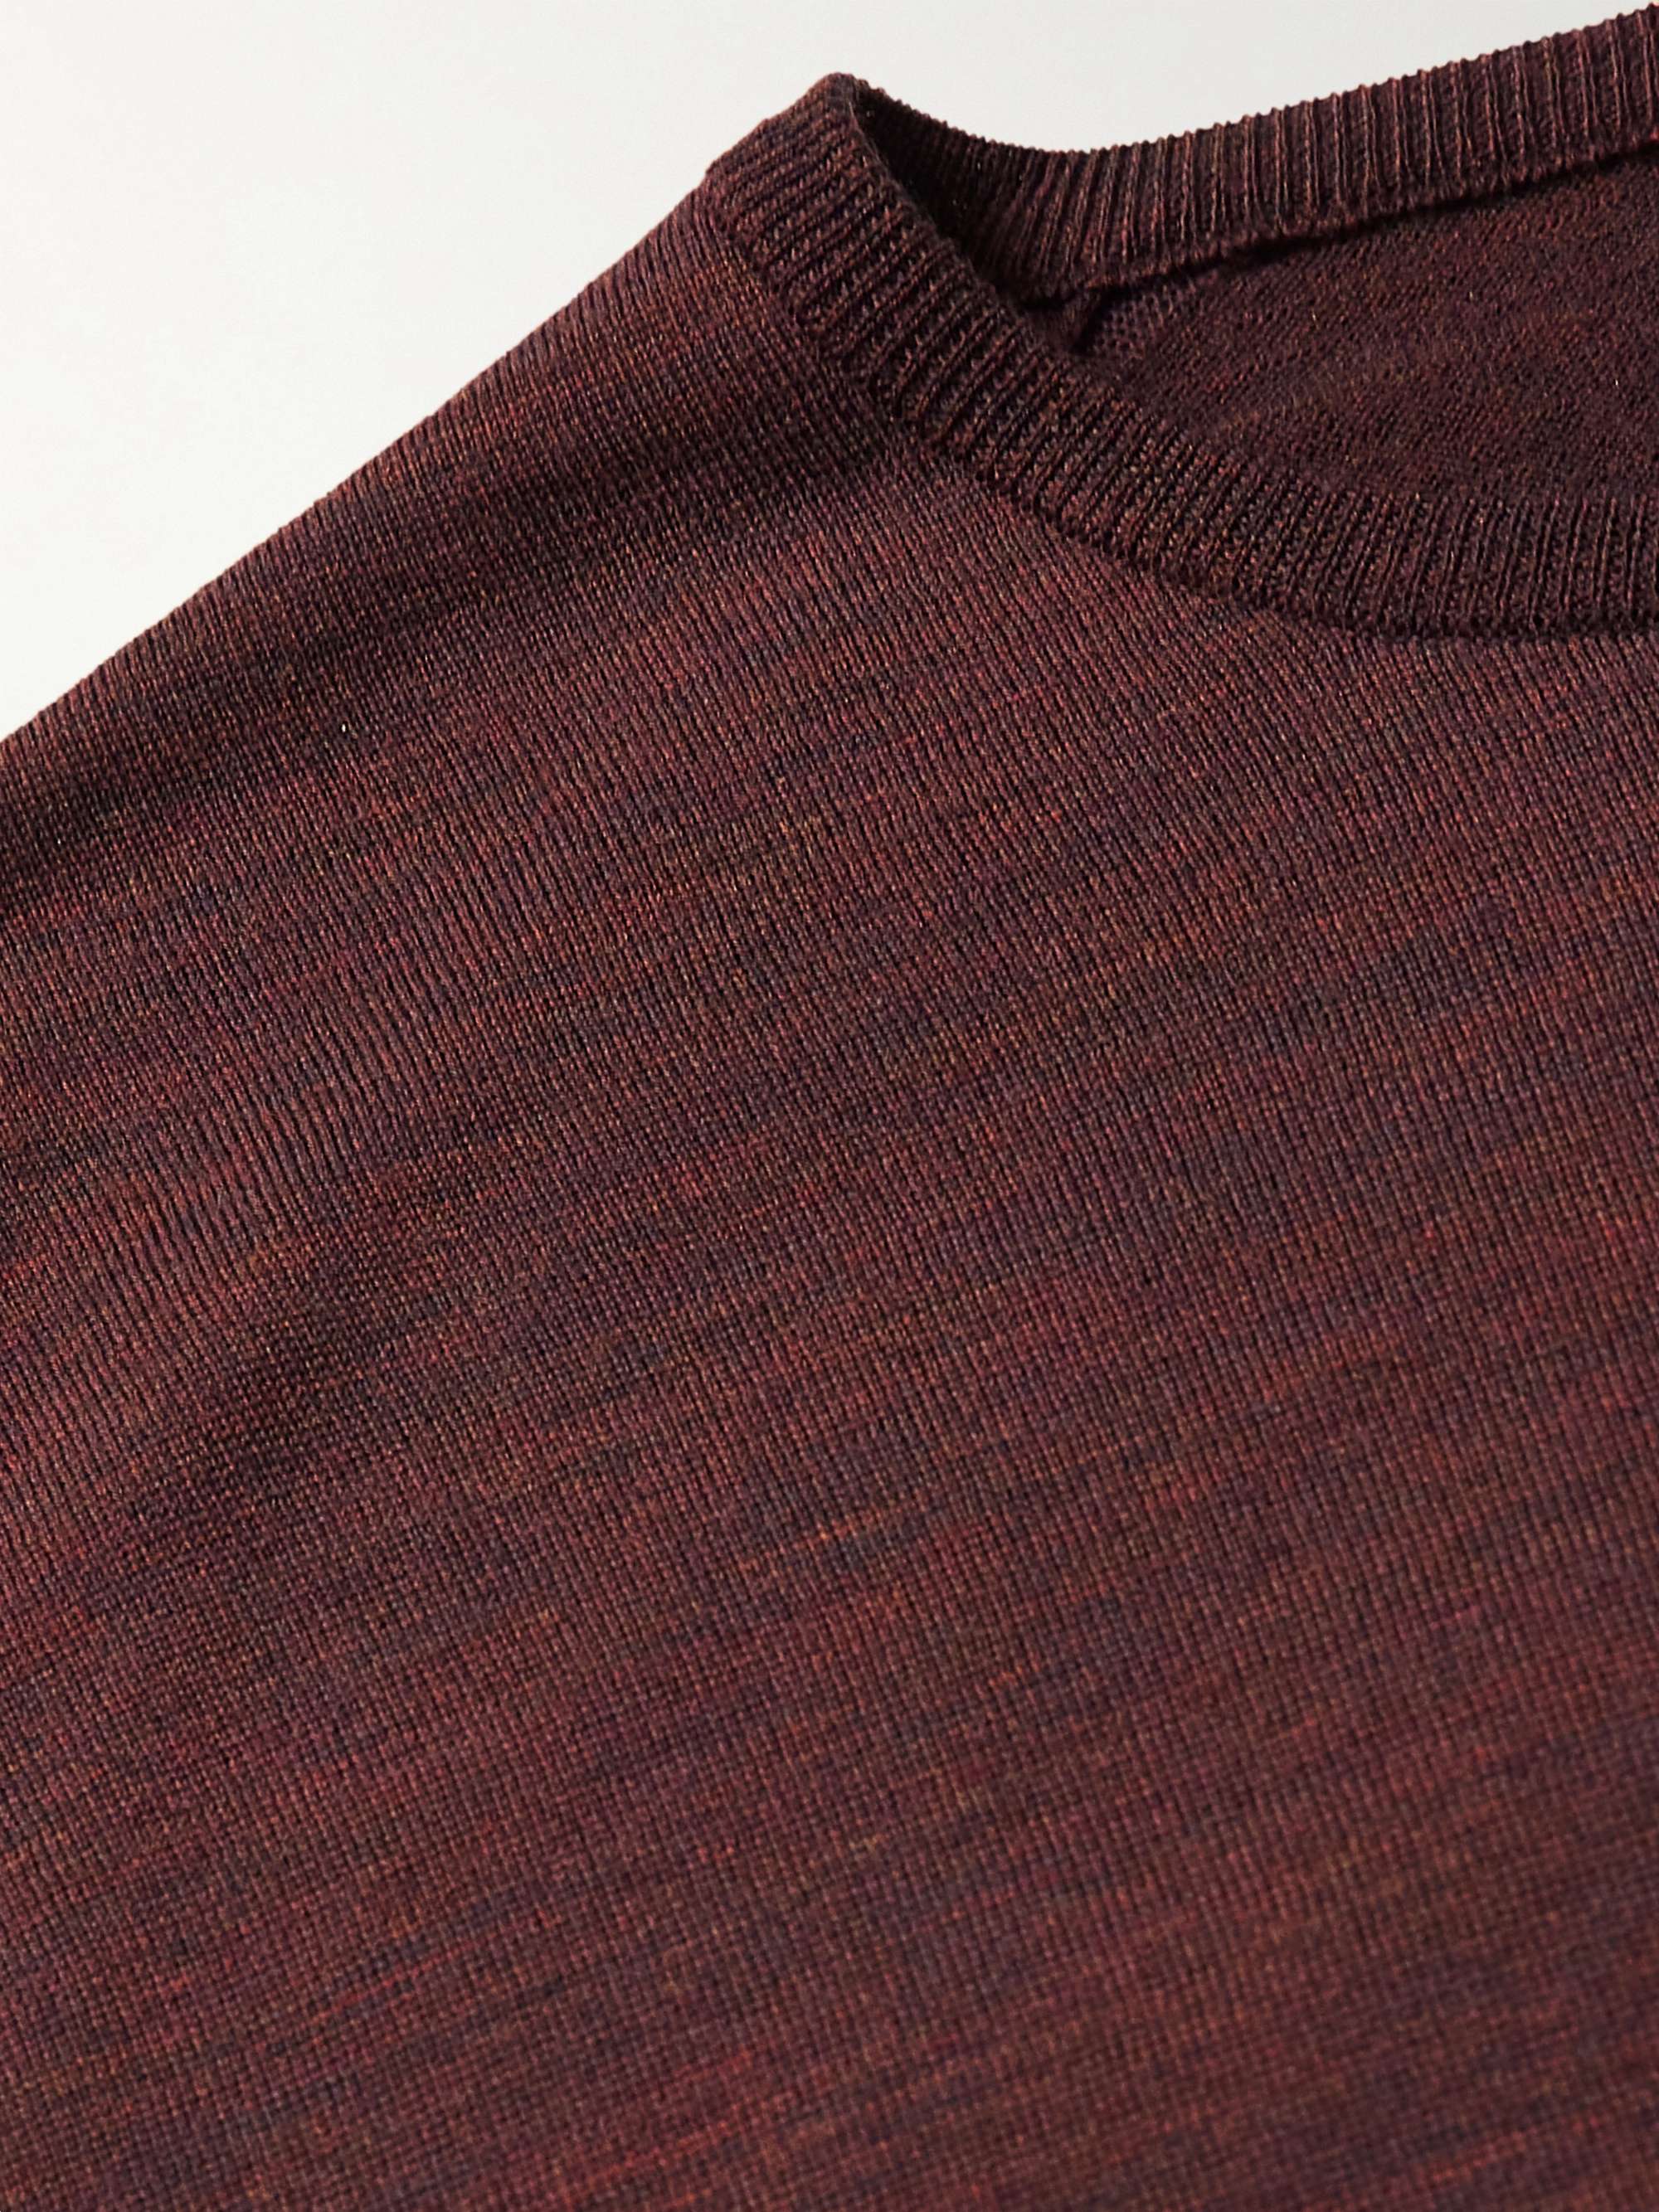 JOHN SMEDLEY Slim-Fit Merino Wool Sweater for Men | MR PORTER